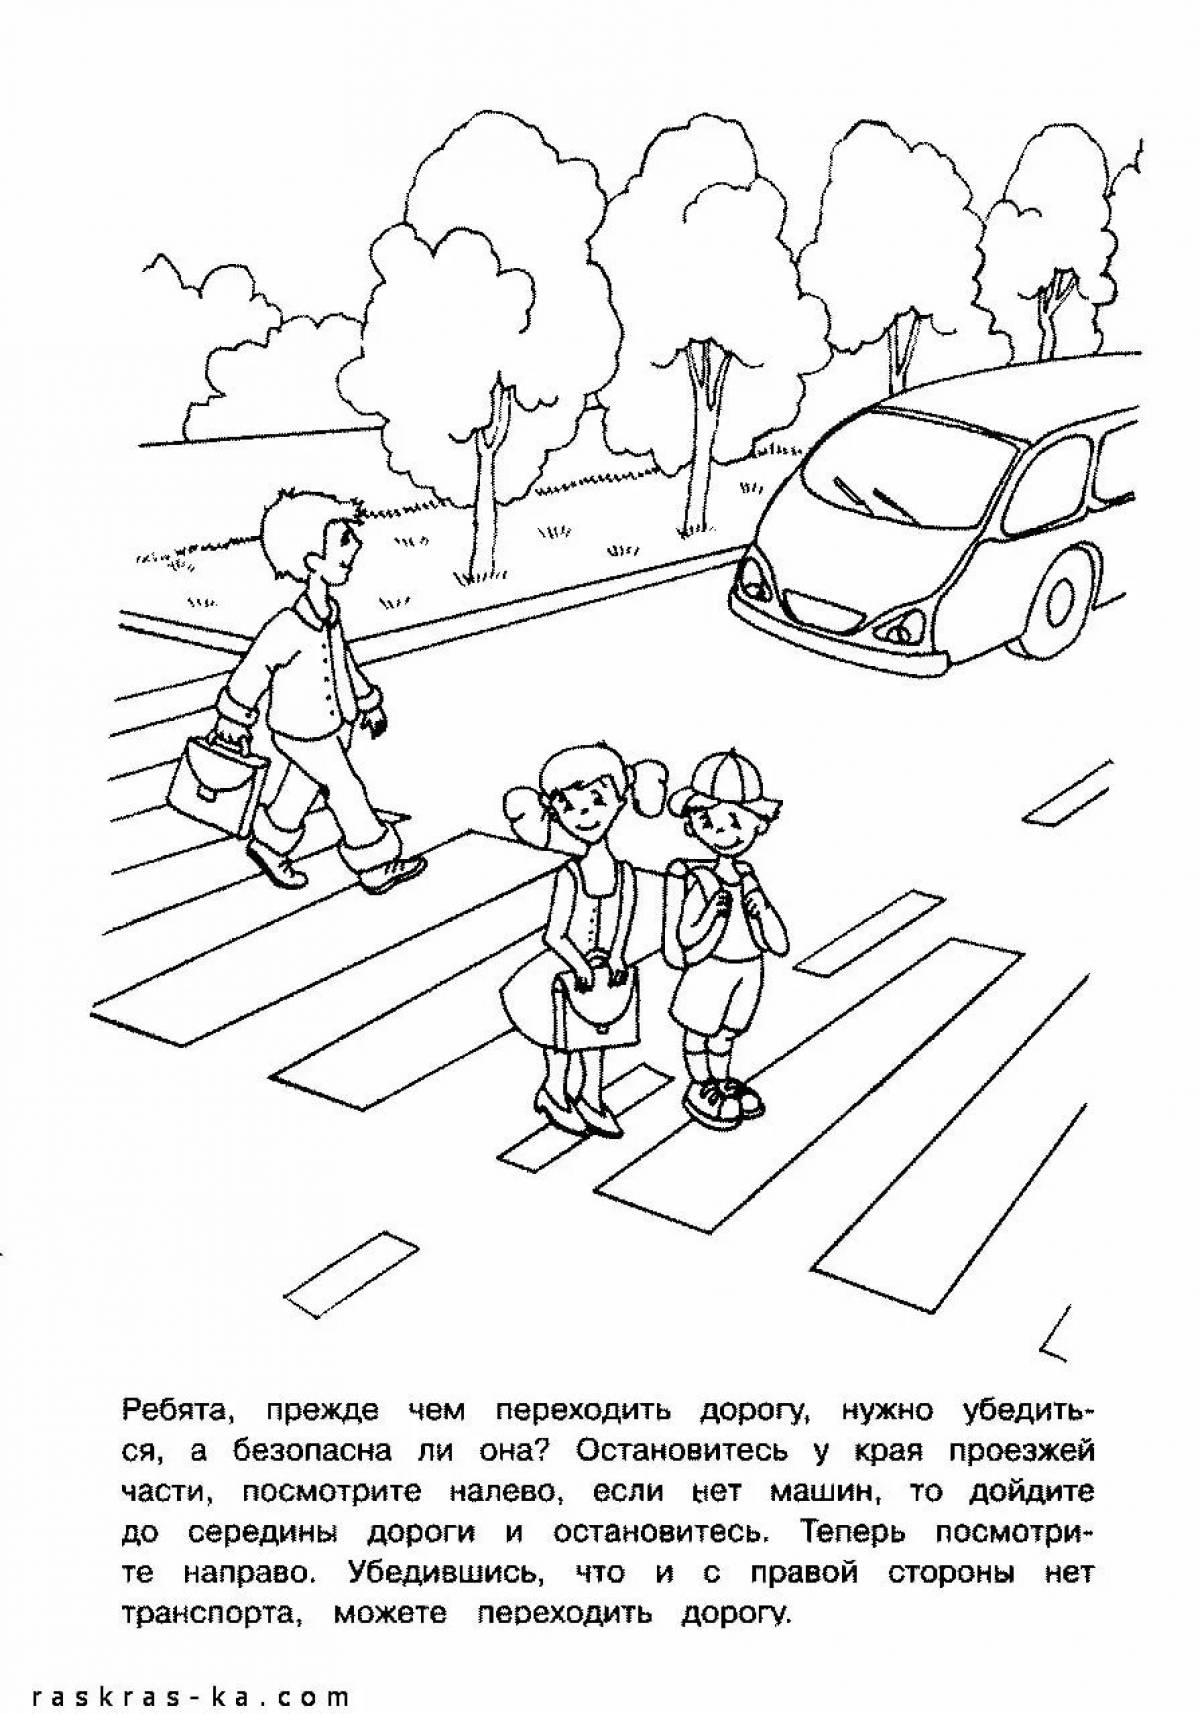 На тему правила дорожного движения для детского сада #8